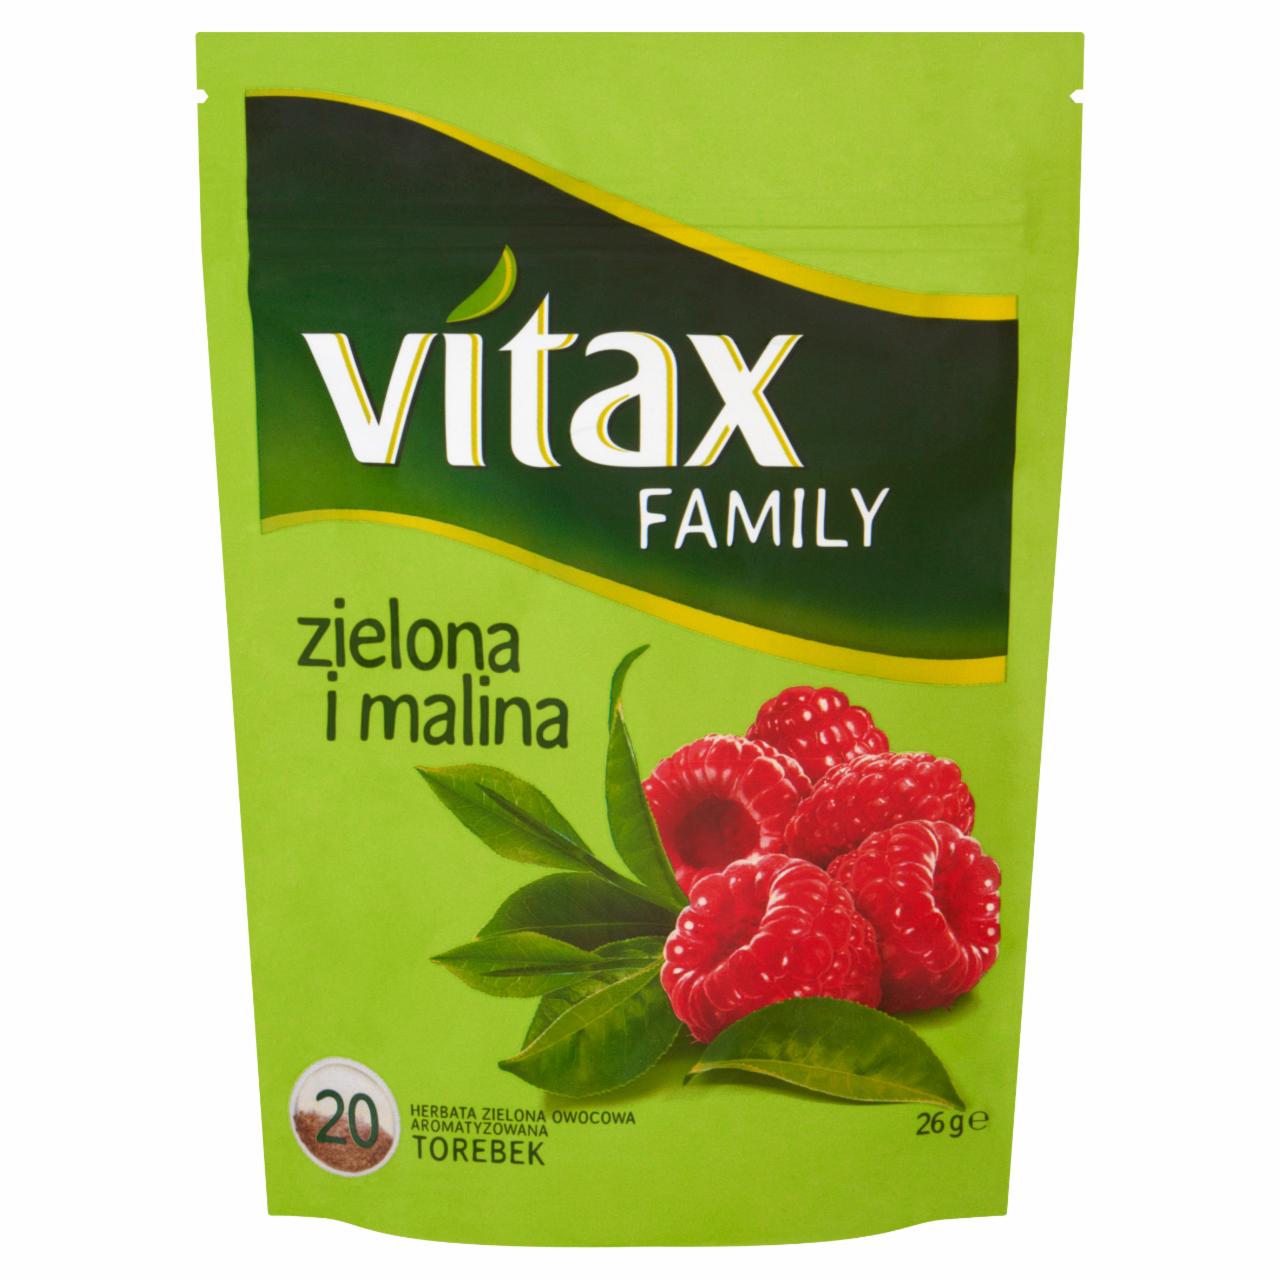 Zdjęcia - Vitax Family zielona i malina Herbata zielona owocowa 26 g (20 torebek)